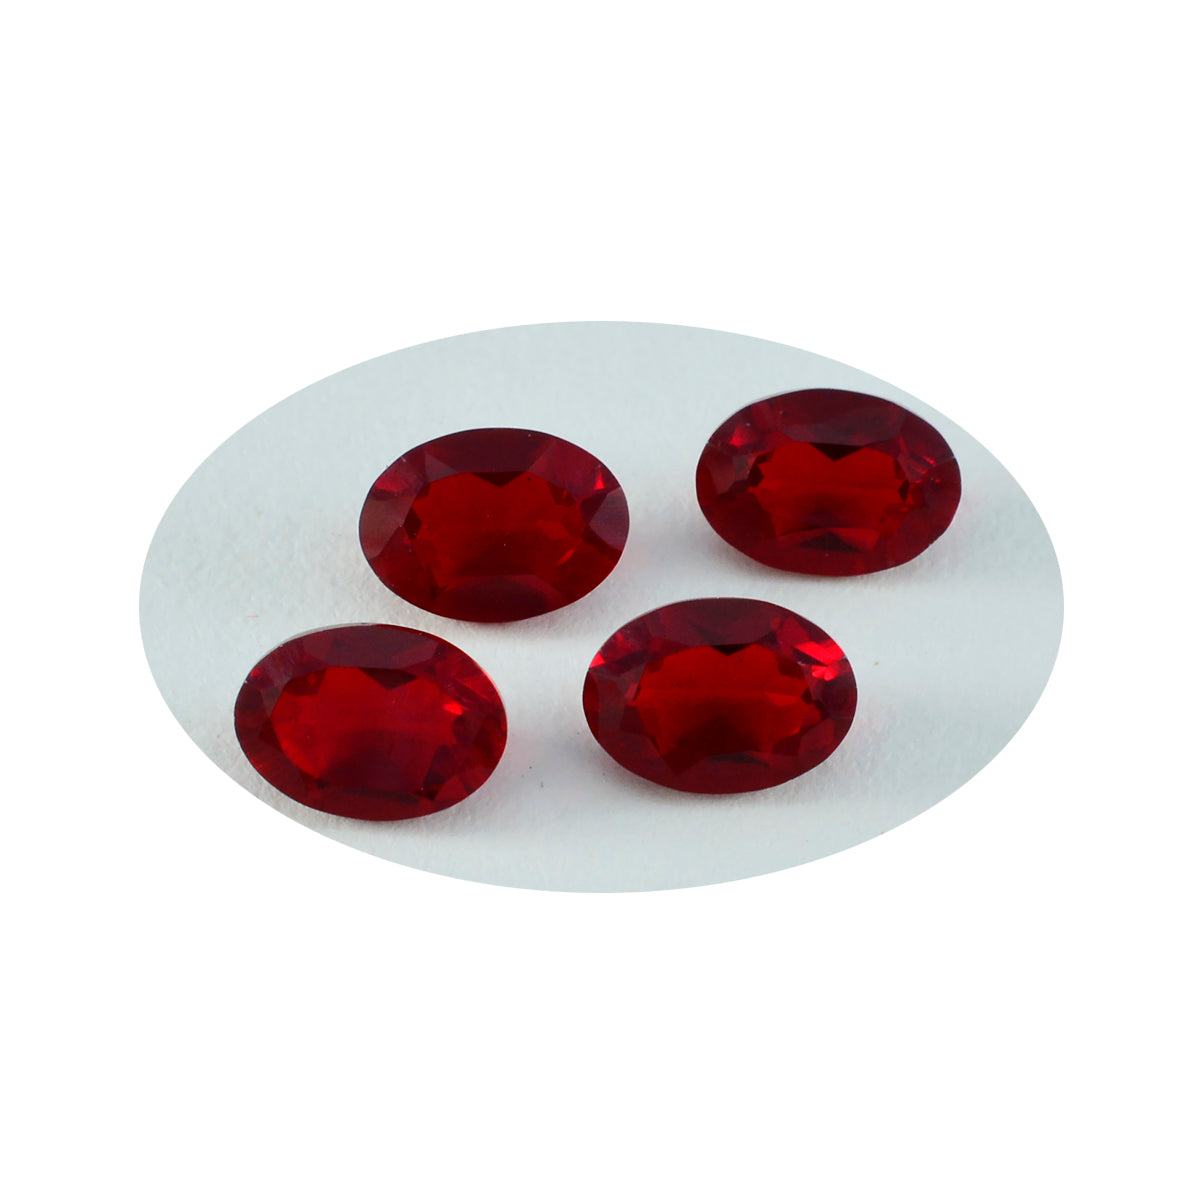 Riyogems 1 Stück roter Rubin mit CZ, facettiert, 6 x 8 mm, ovale Form, Edelsteine von erstaunlicher Qualität